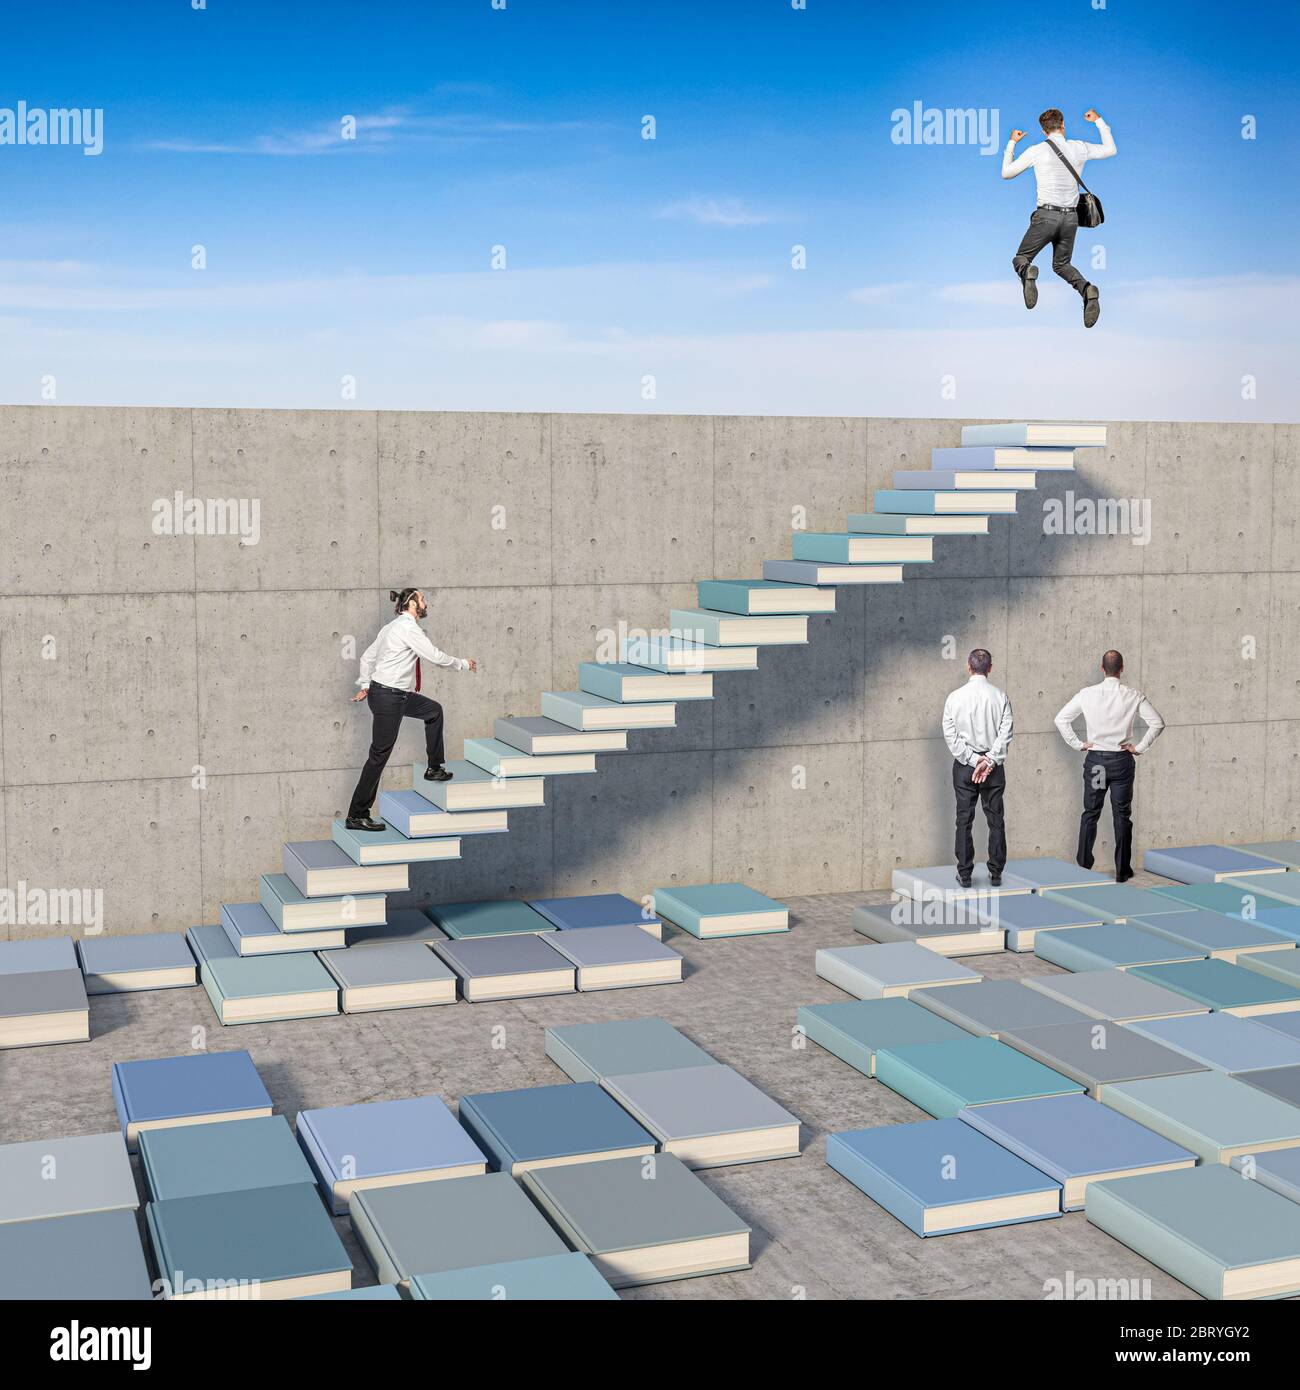 uomini d'affari, alcuni di loro hanno creato una scala con libri a terra per superare il muro, altri guardano al muro. concetto di creatività e o Foto Stock